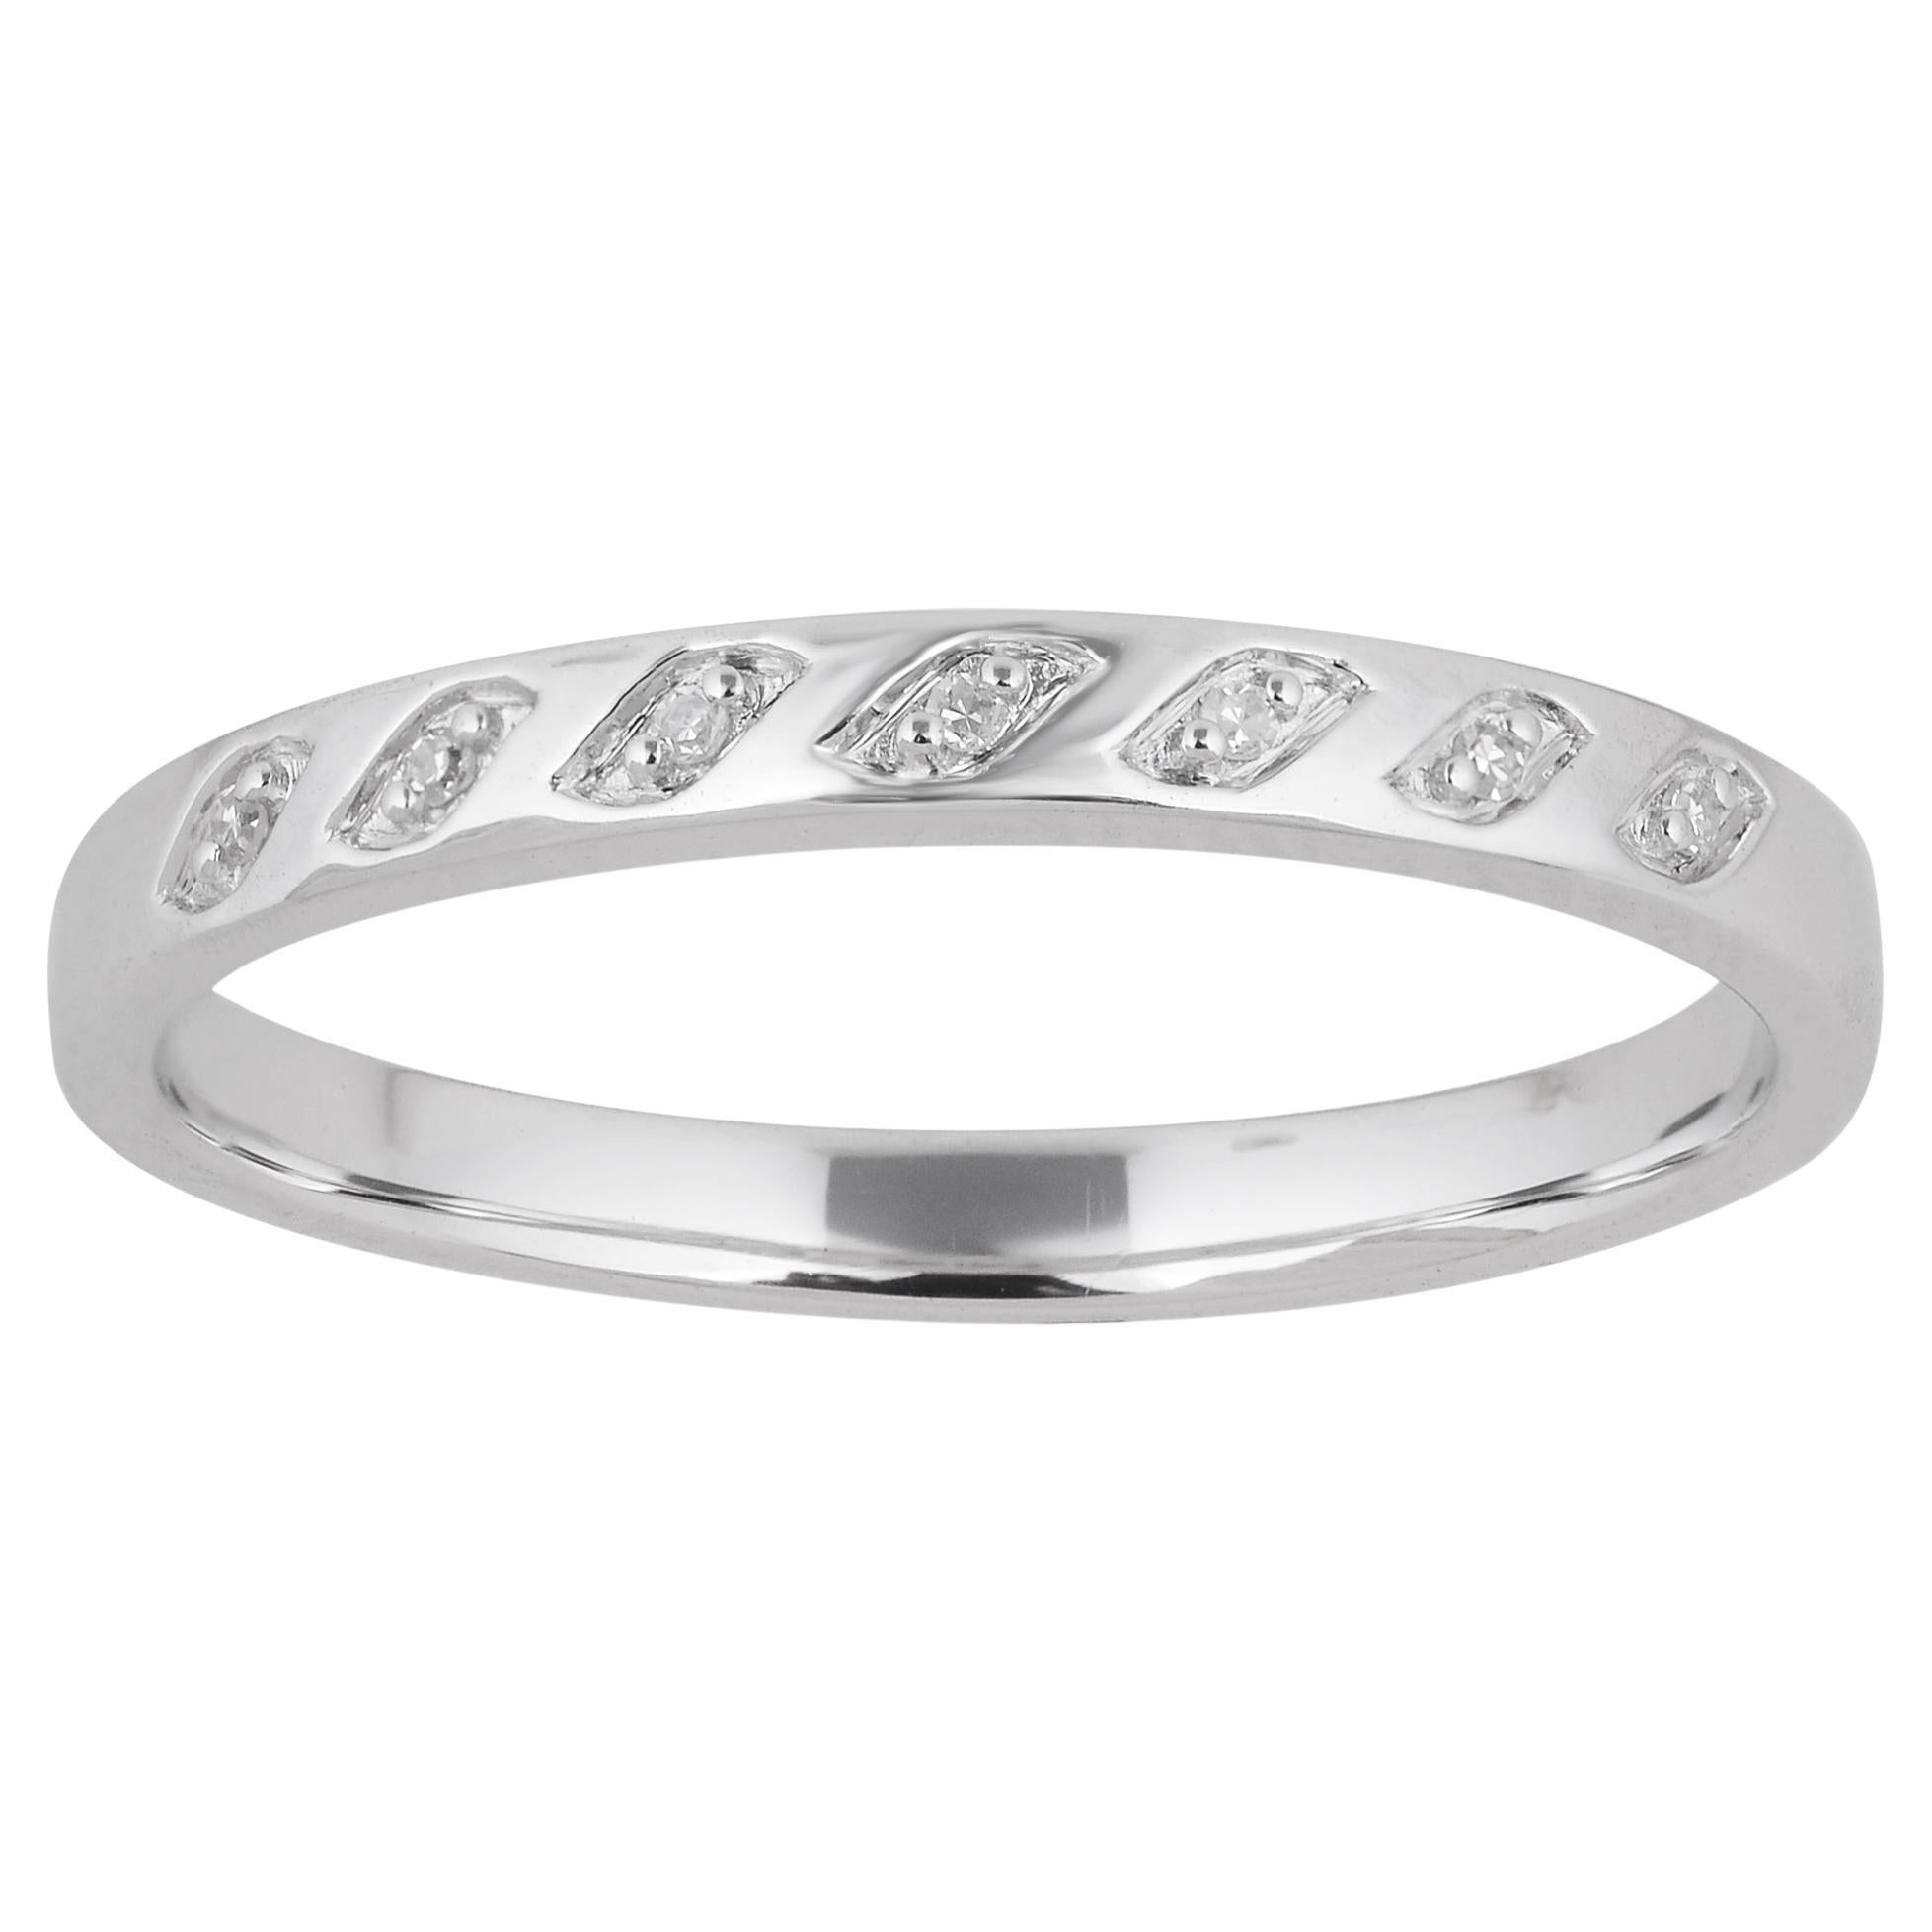 TJD 0.02 Carat Natural Round Diamond 14 Karat White Gold Wedding Band Ring For Sale